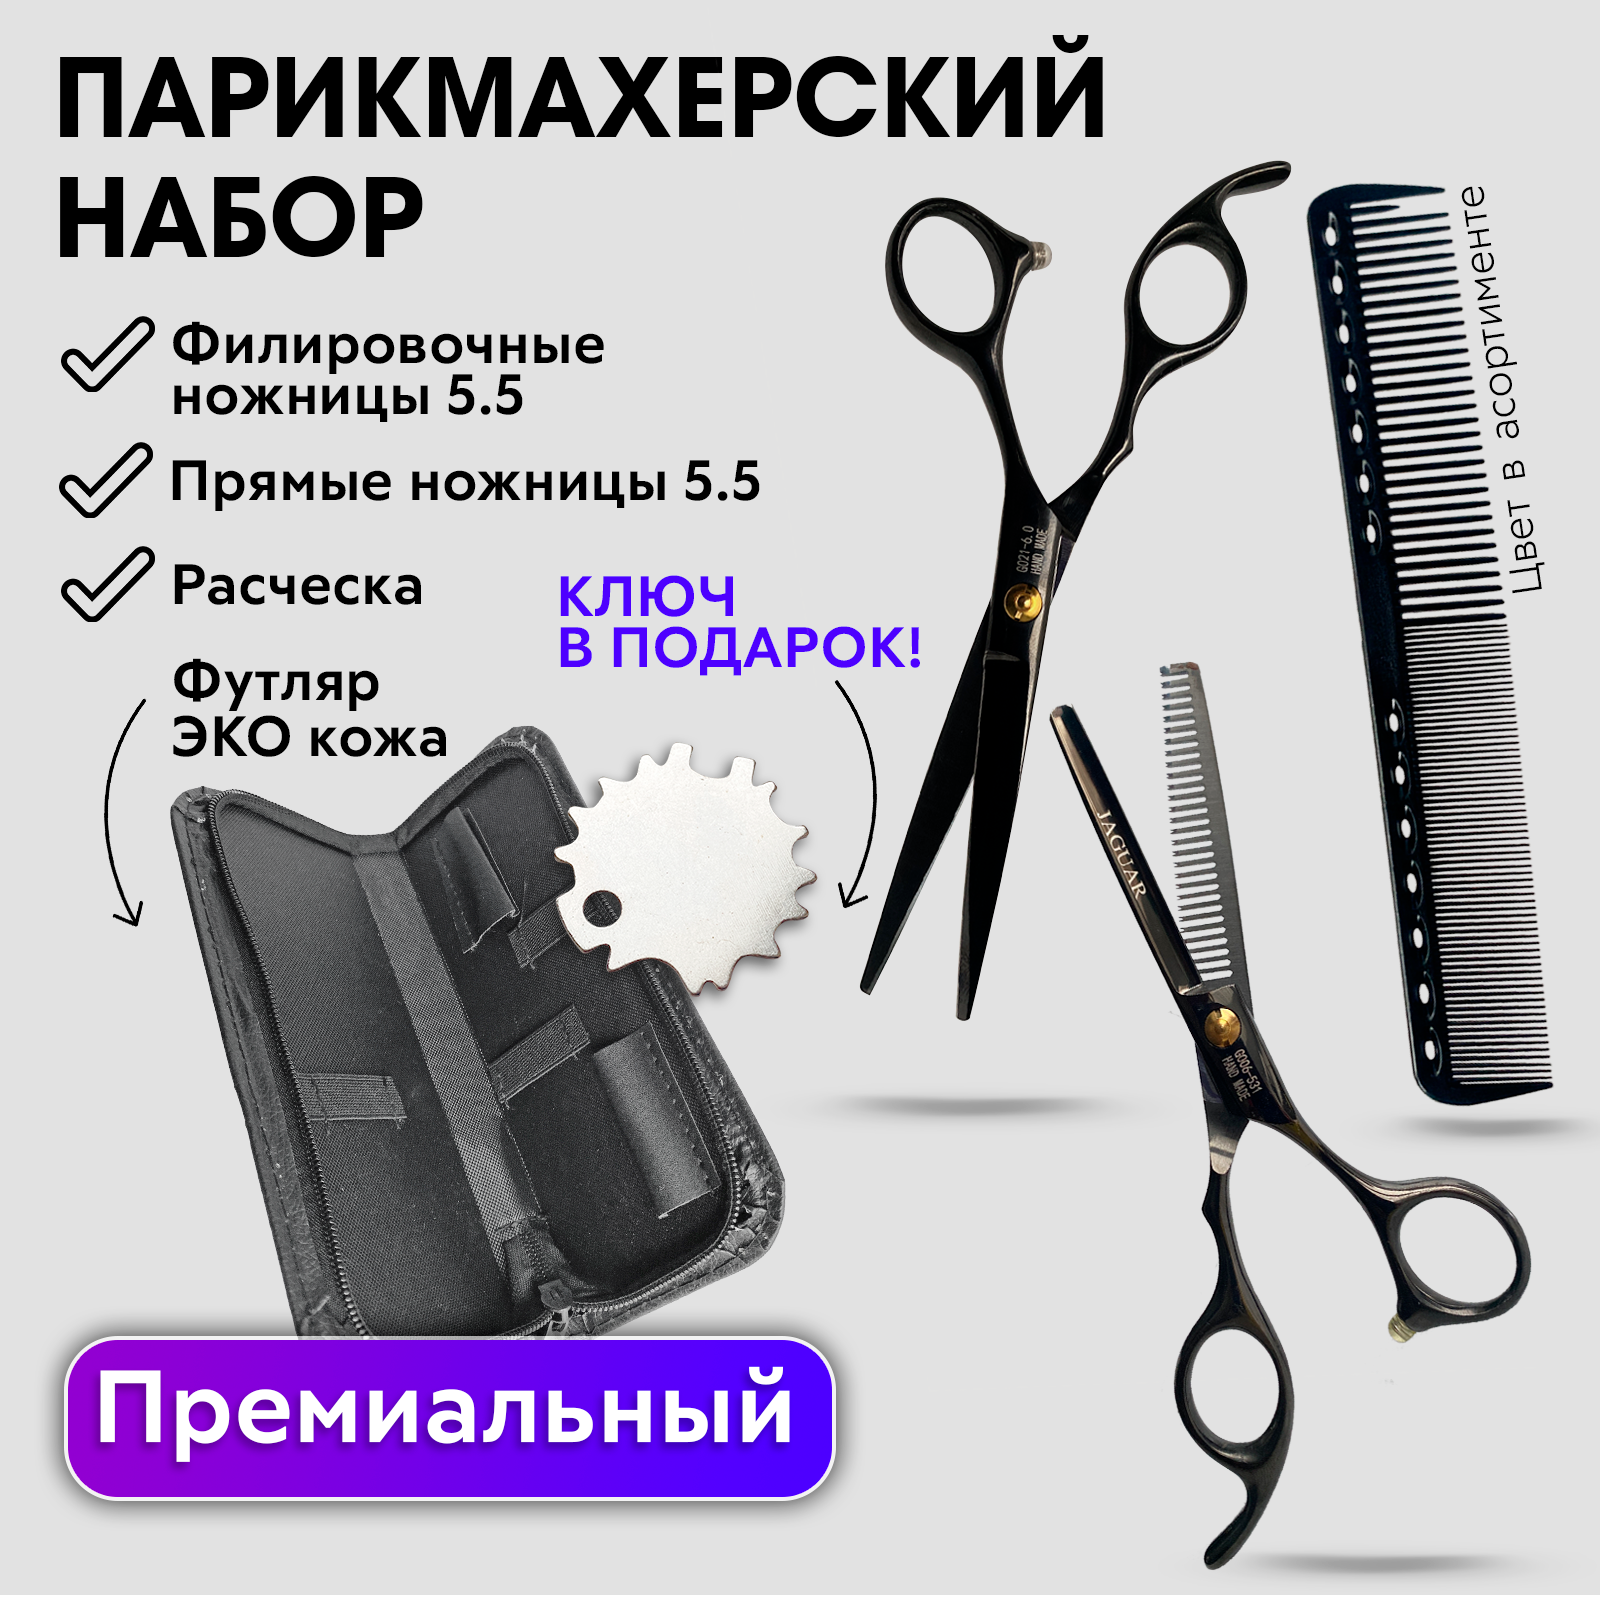 Набор Hожницы парикмахерские прямые Charites ножницы филировочные размер 5.5 черные+1485